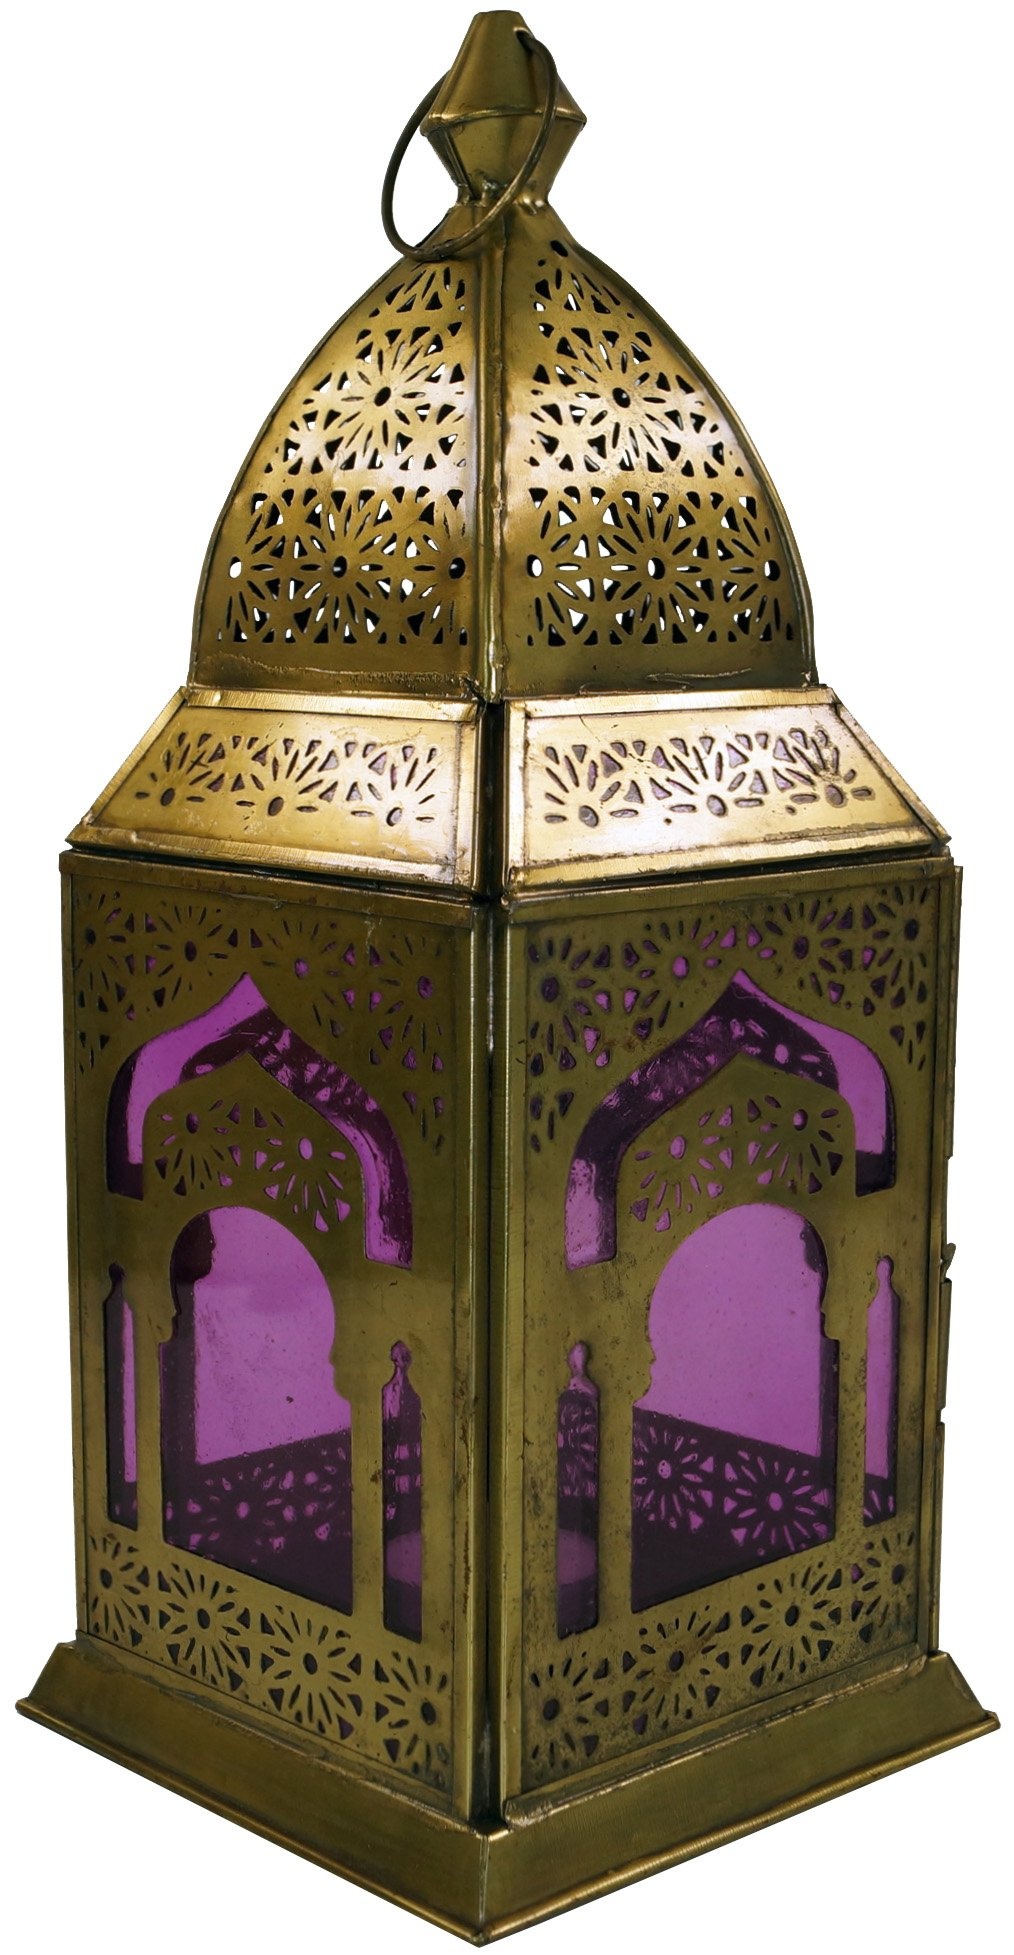 GURU SHOP Orientalische Metall/Glas Laterne in Marrokanischem Design, Windlicht, Lila, Farbe: Lila, 30x13x13 cm, Orientalische Laternen